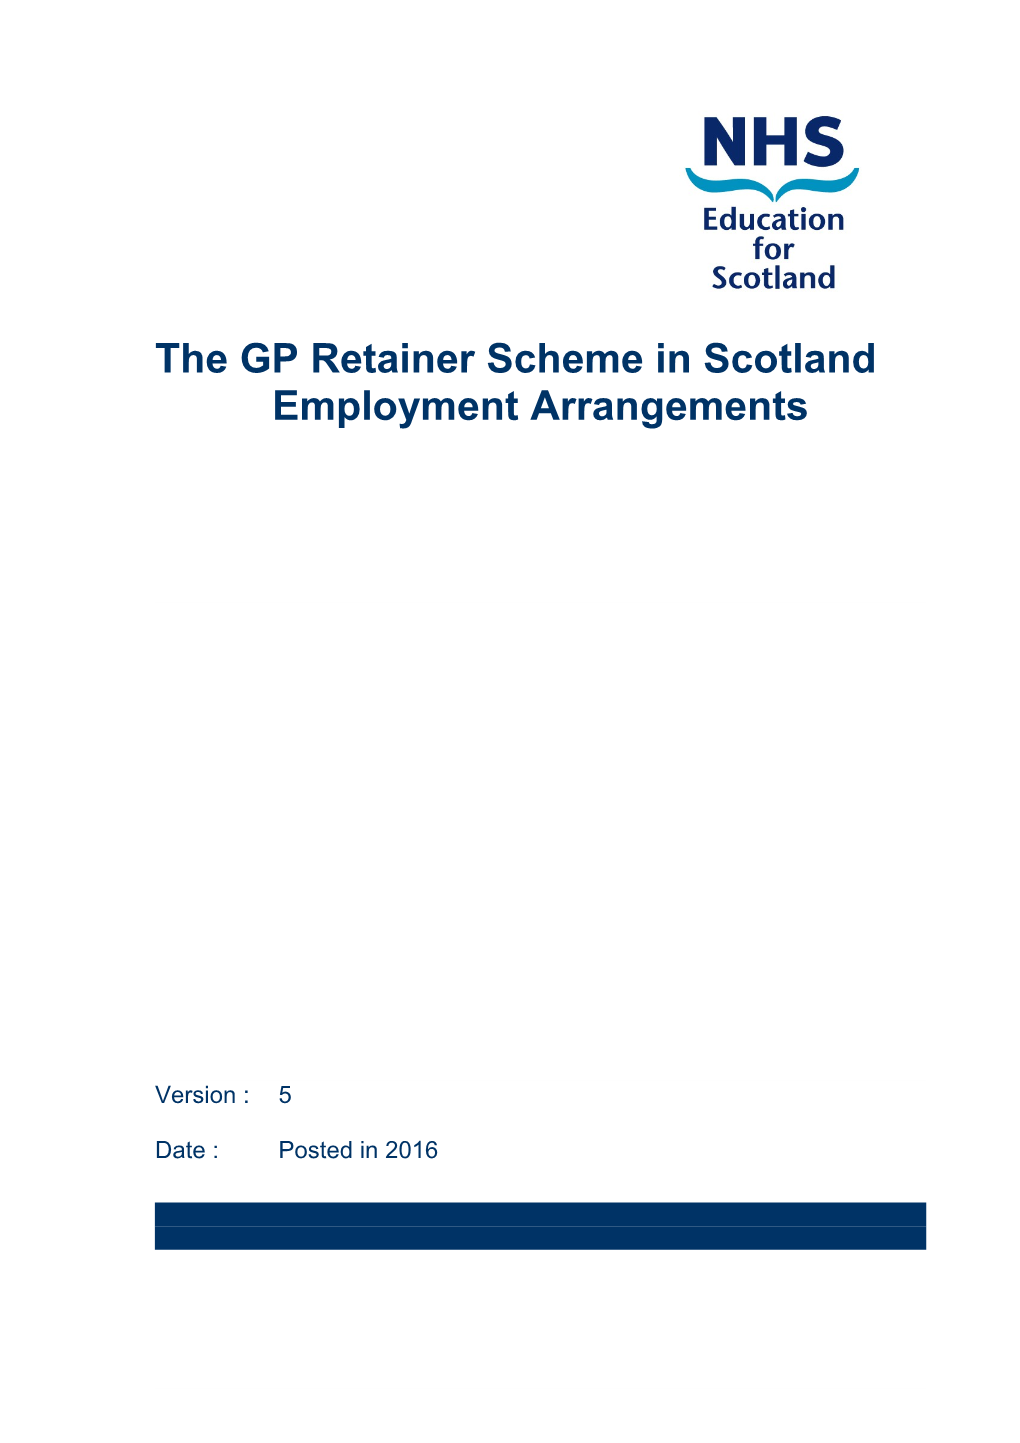 Employment Arrangements for the Gp Retainer Scheme